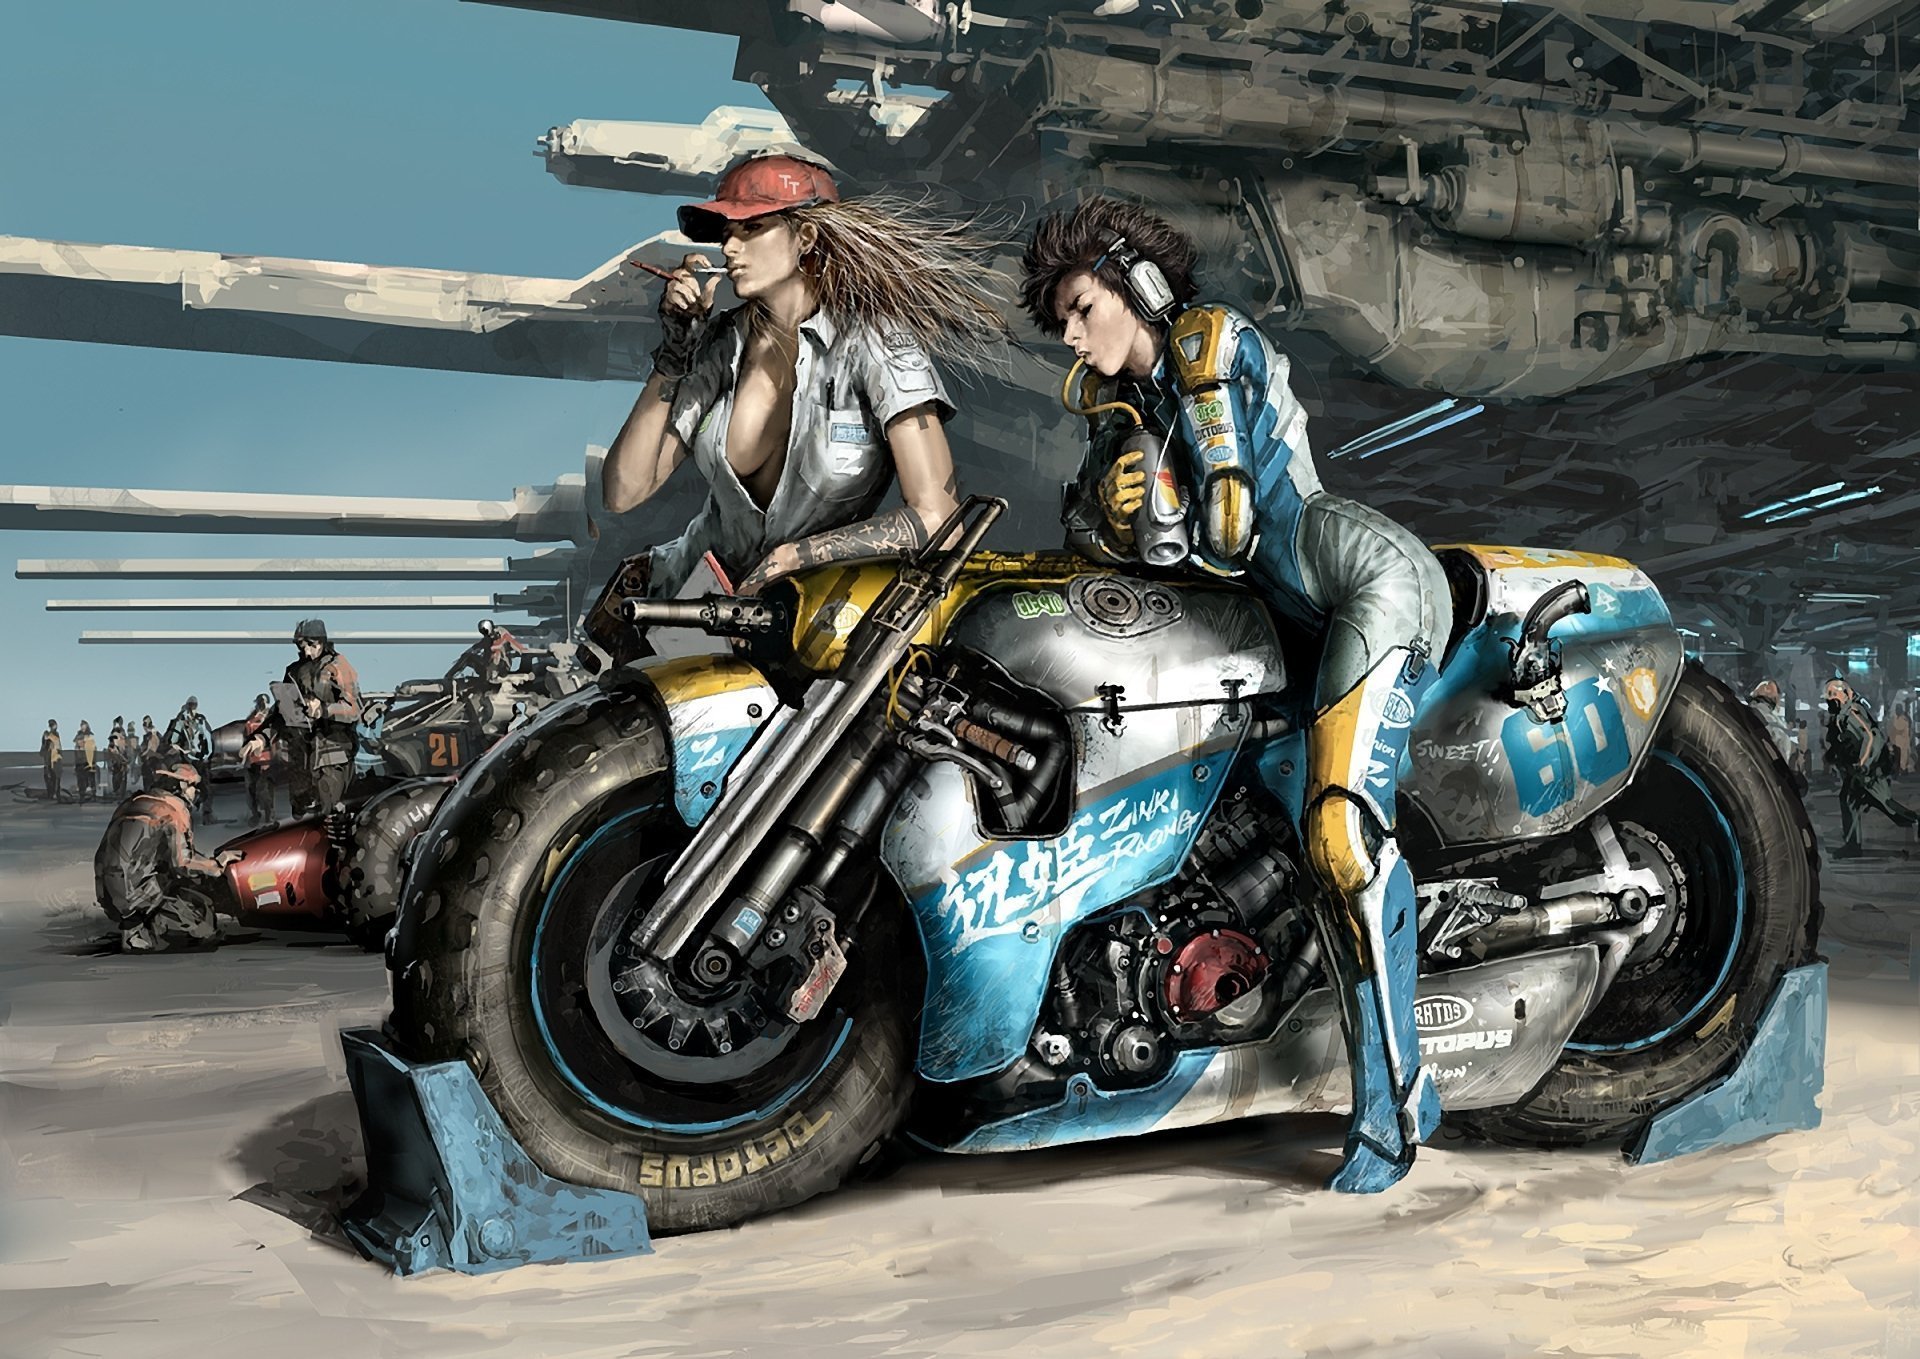 Cyberpunk motorcycle art фото 30